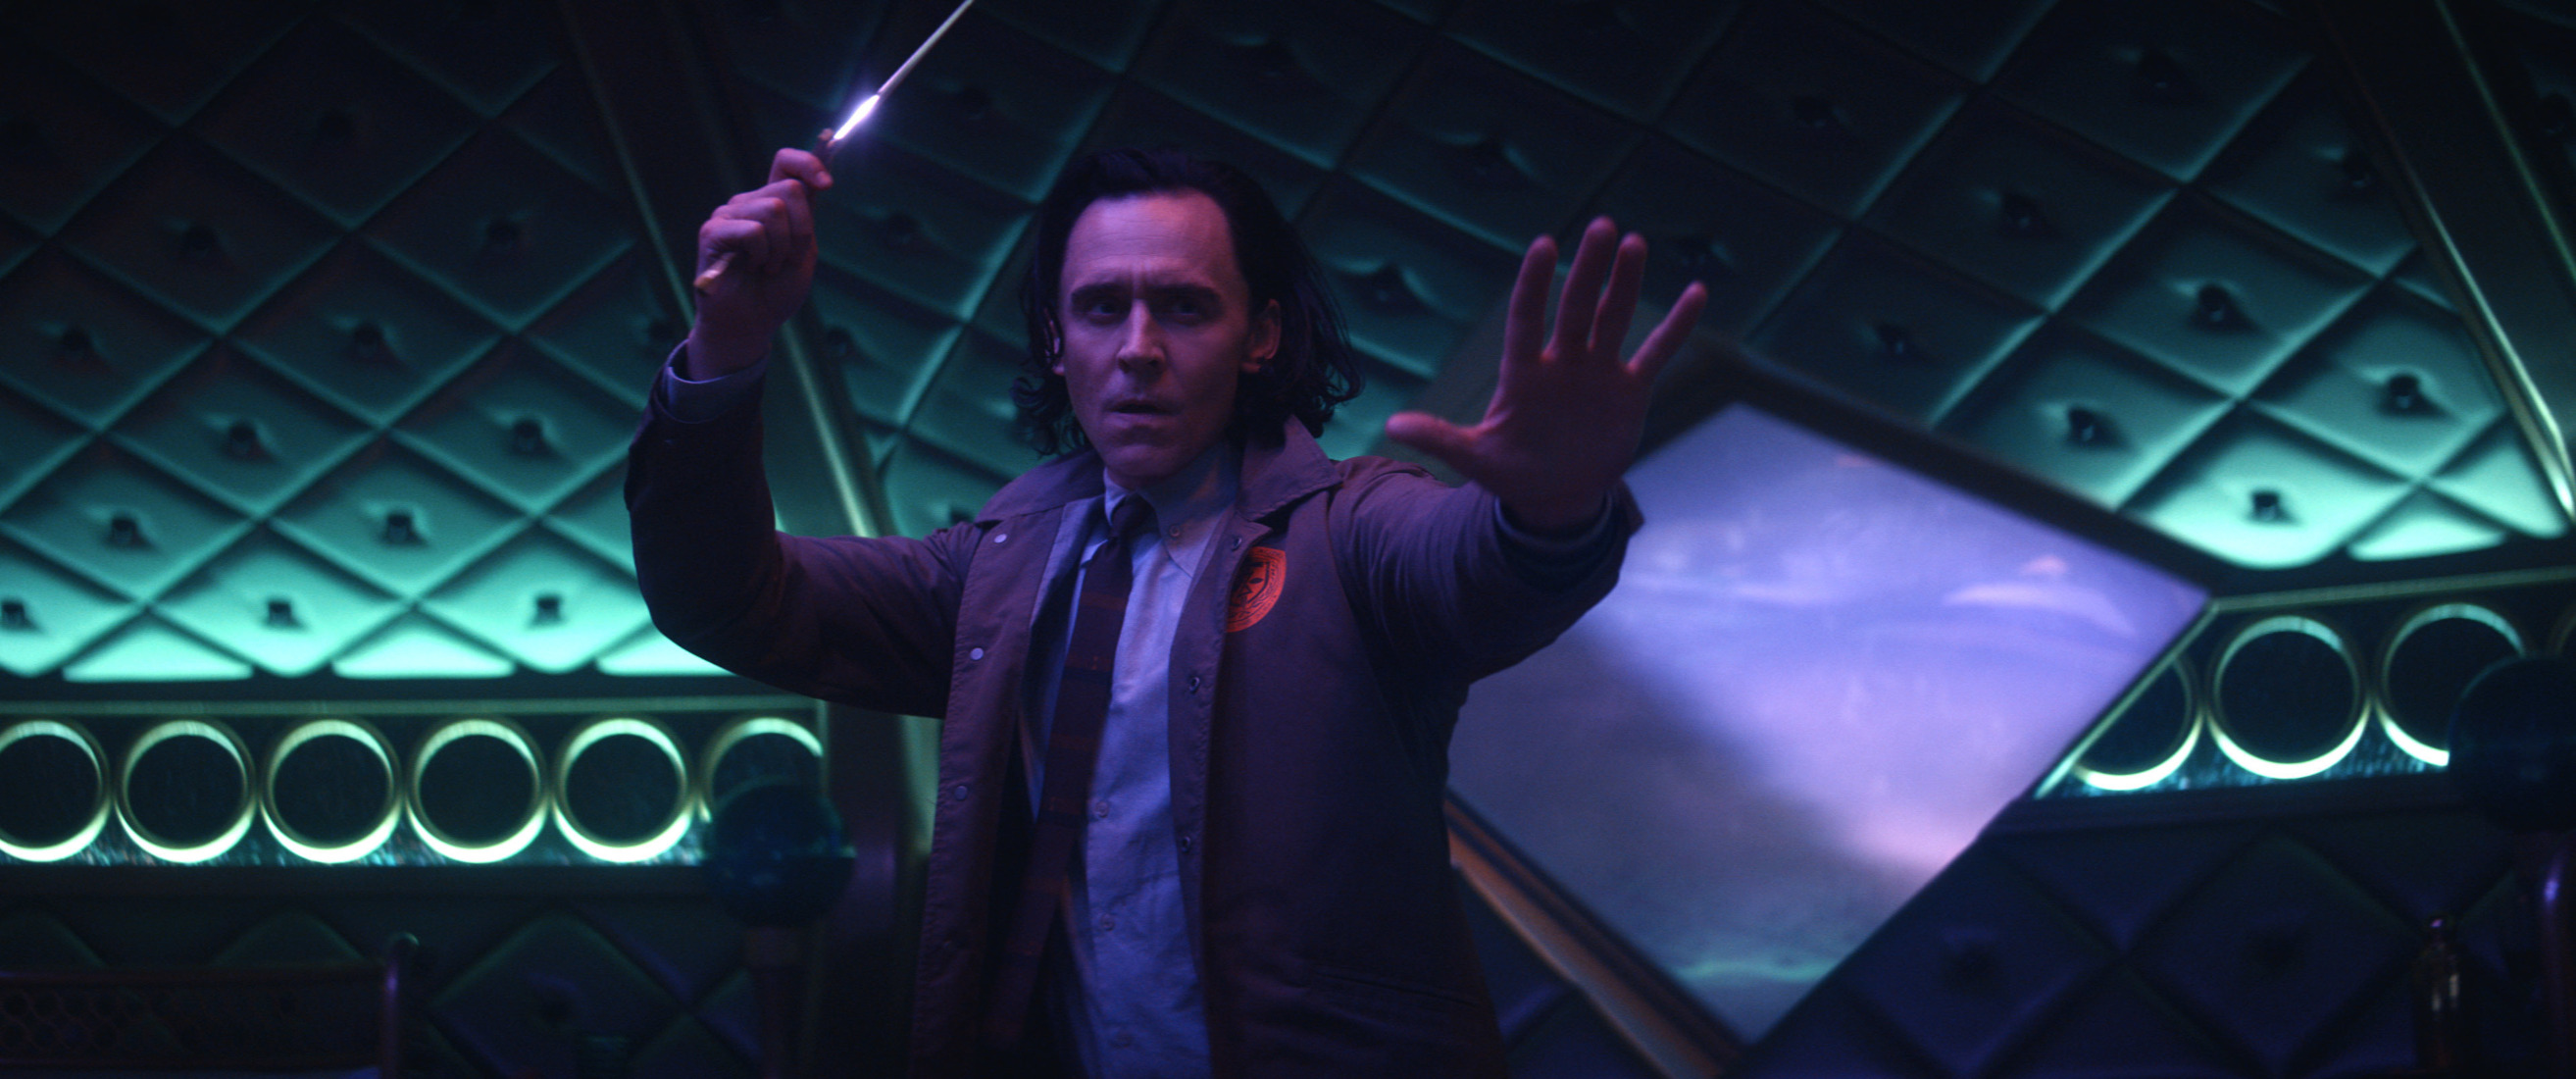 Tom Hiddleston in 'Loki.' He looks like he's ready to fight.